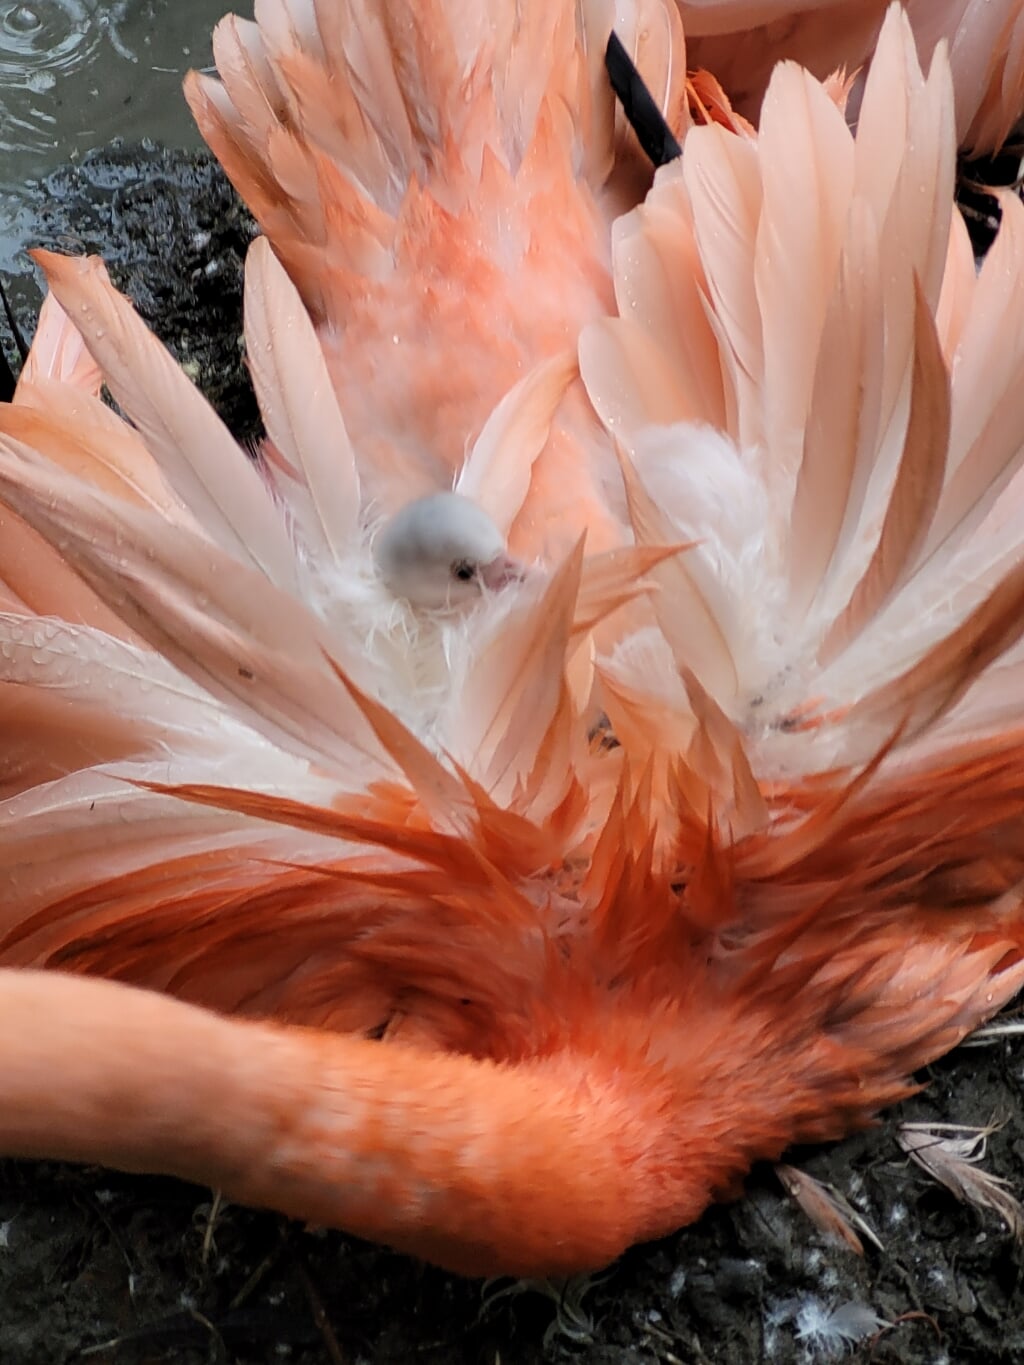 Flamingo kuikens zijn eerst grijs en later wit van kleur. Daarna worden ze geleidelijk aan roze